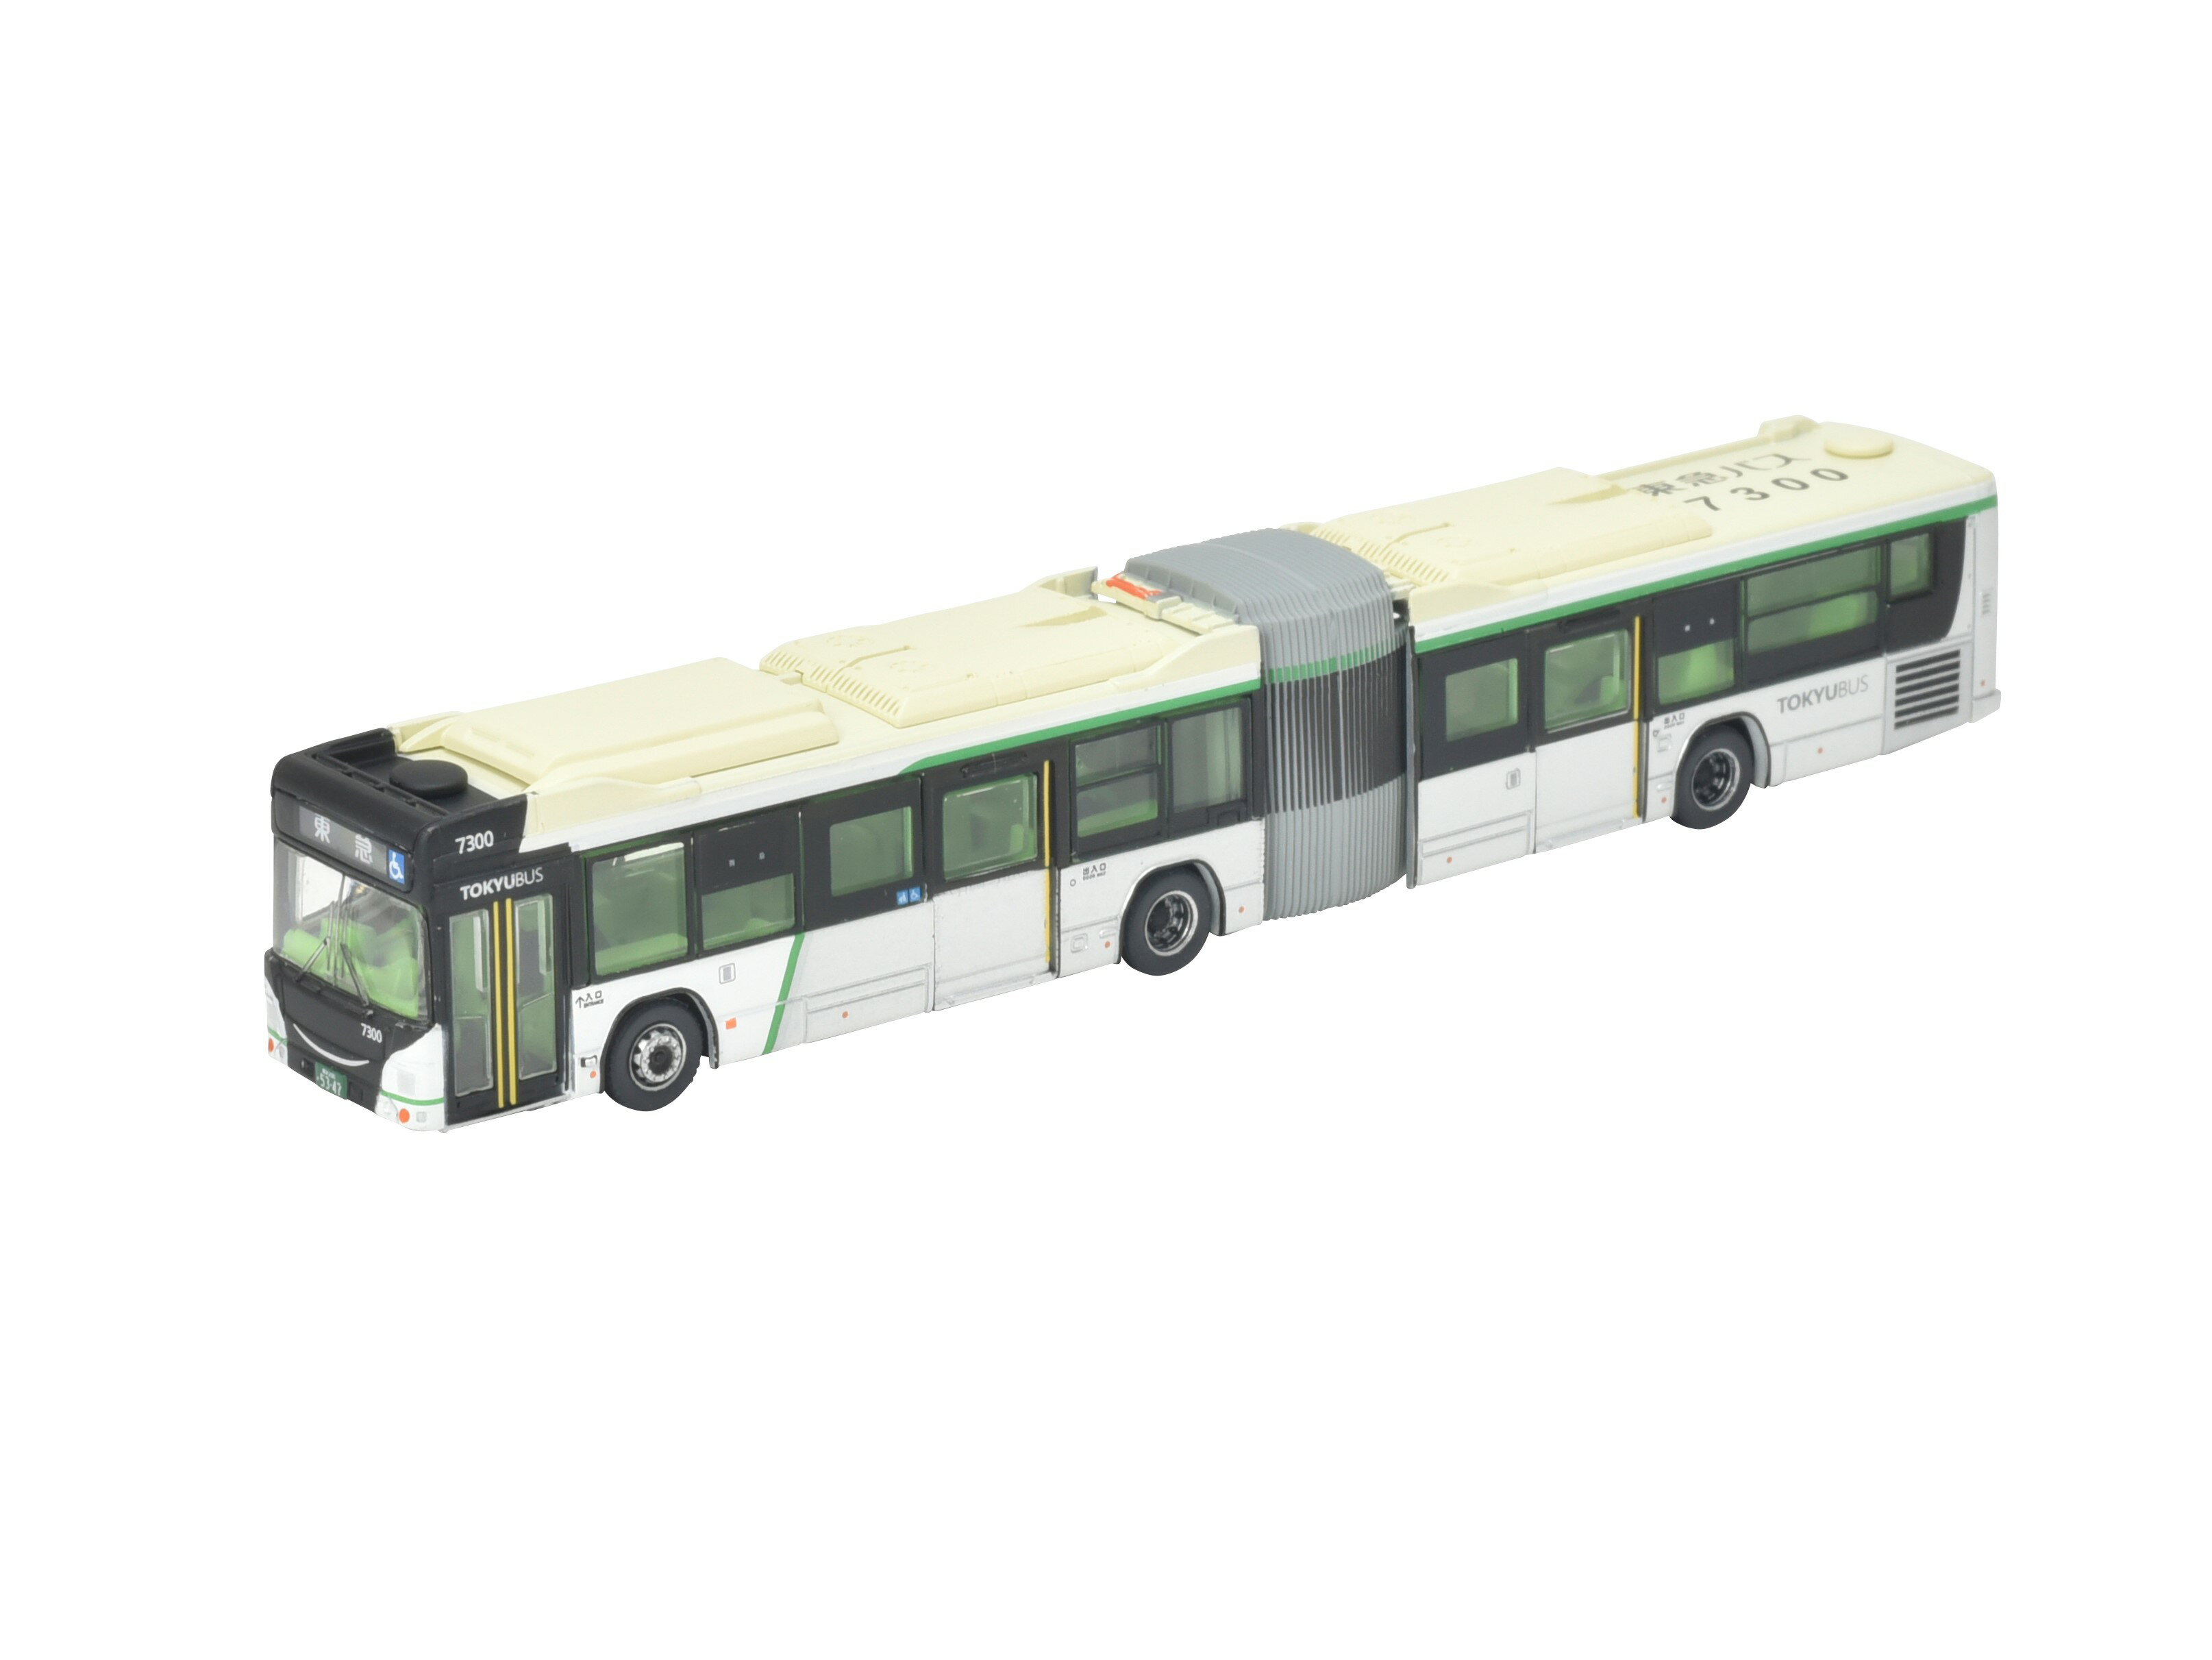 ［鉄道模型］トミーテック (N) ザ・バスコレクション 東急バス連節バス 1